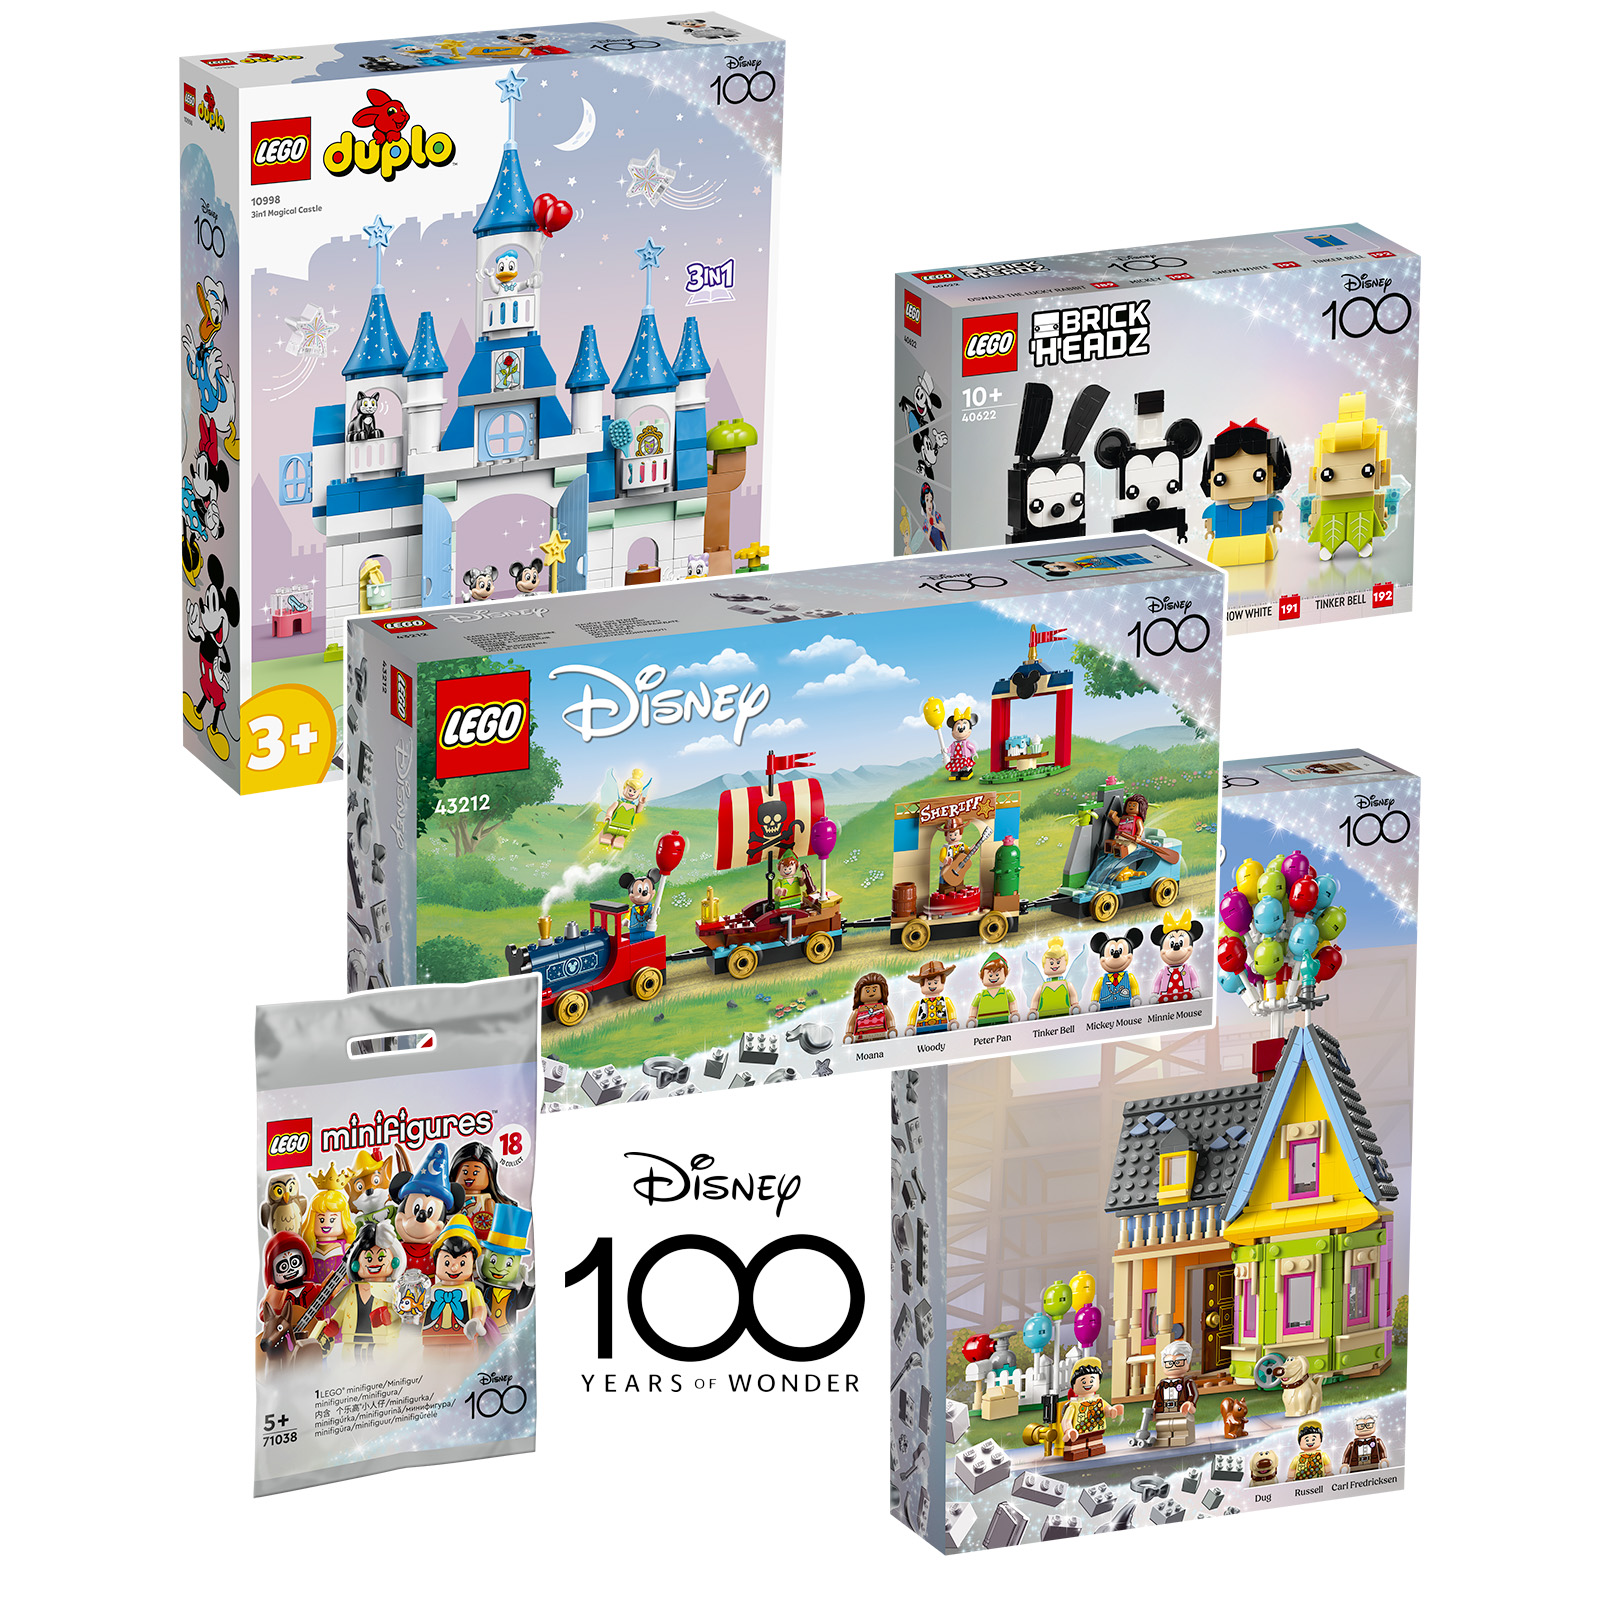 ▻ Nuovo LEGO Disney 100th Celebration 2023: l'elenco dei prodotti  pianificati - HOTH BRICKS